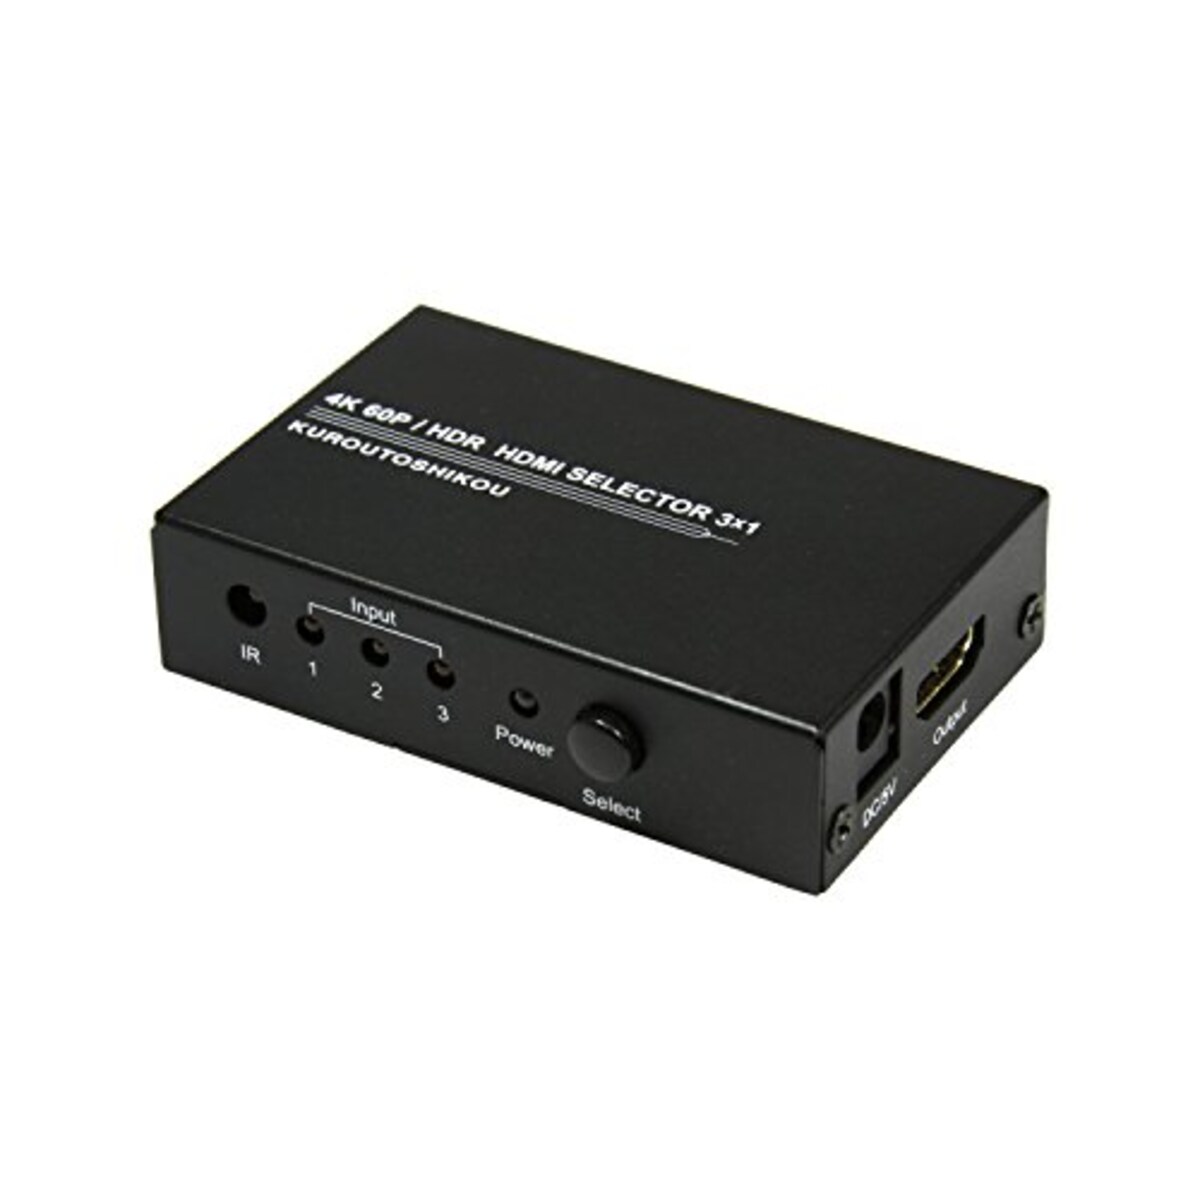 HDMI切替器セレクタ リモコン付